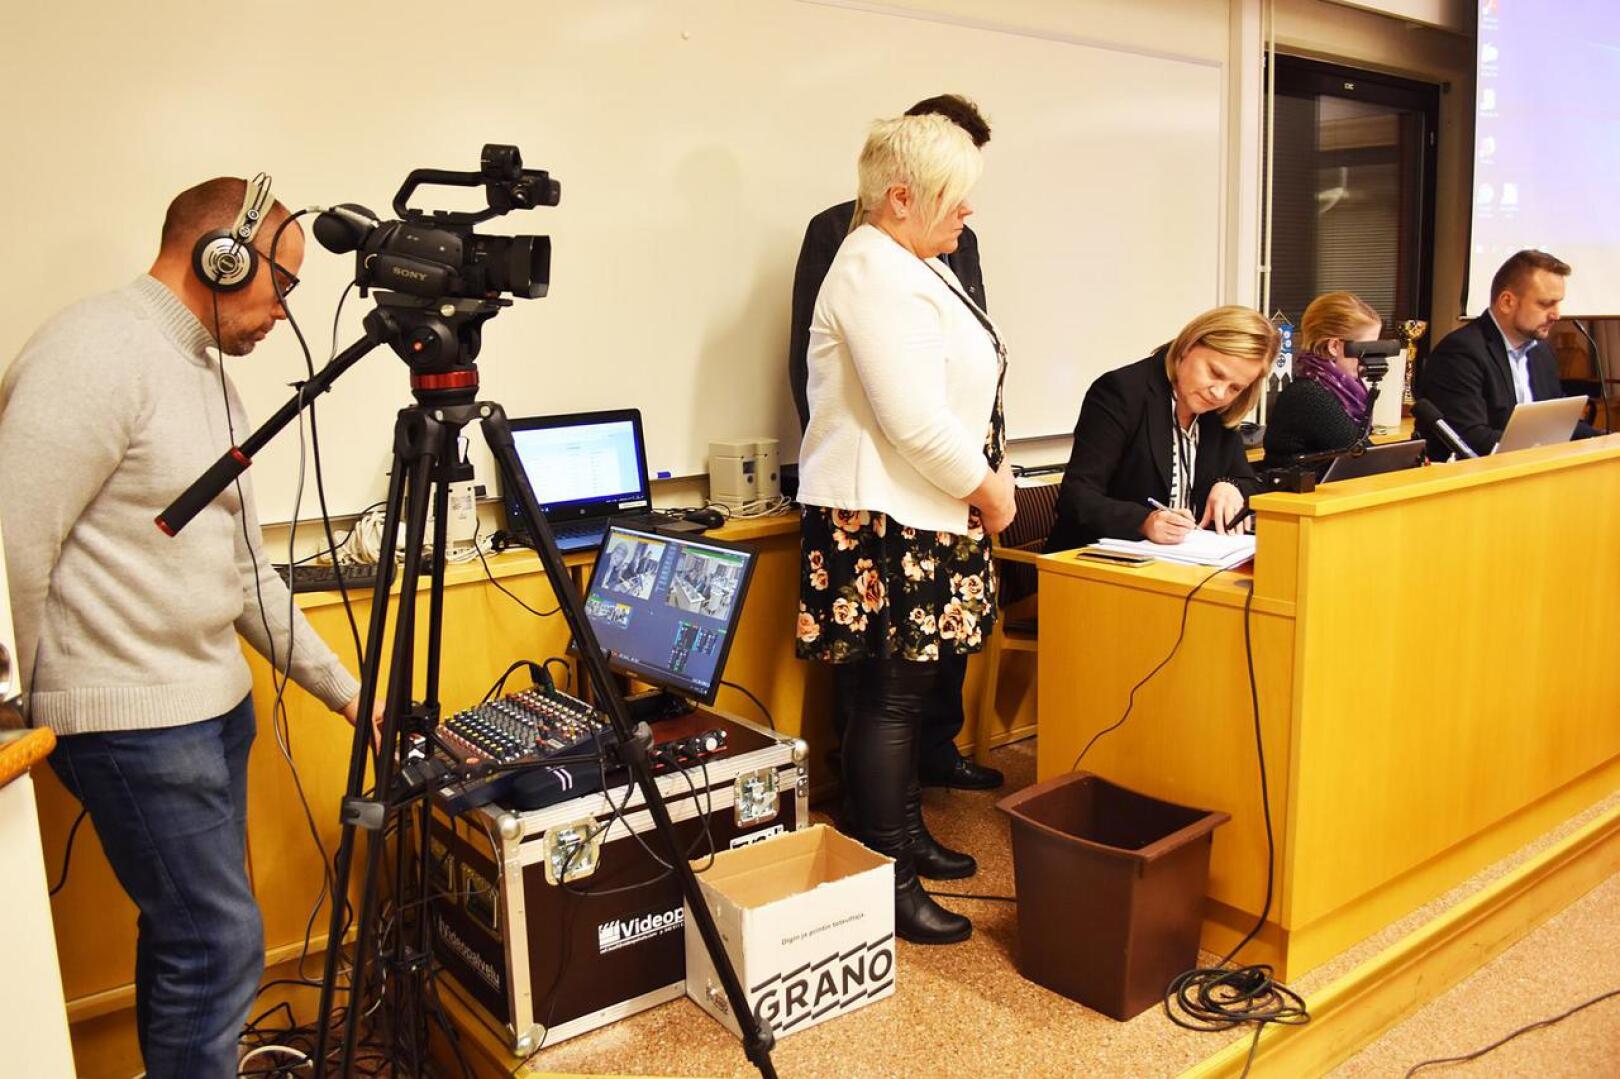 Valtuuston kokous videoitiin Haapavedellä nyt toista kertaa. Videoinnin tilannut vasemmistoliiton valtuutettu Esko Joentakanen kertoi, että kustannuksiin osallistuu muitakin valtuutettuja. Työ hoituu Joentakasen mukaan pienellä keikkakorvauksella.